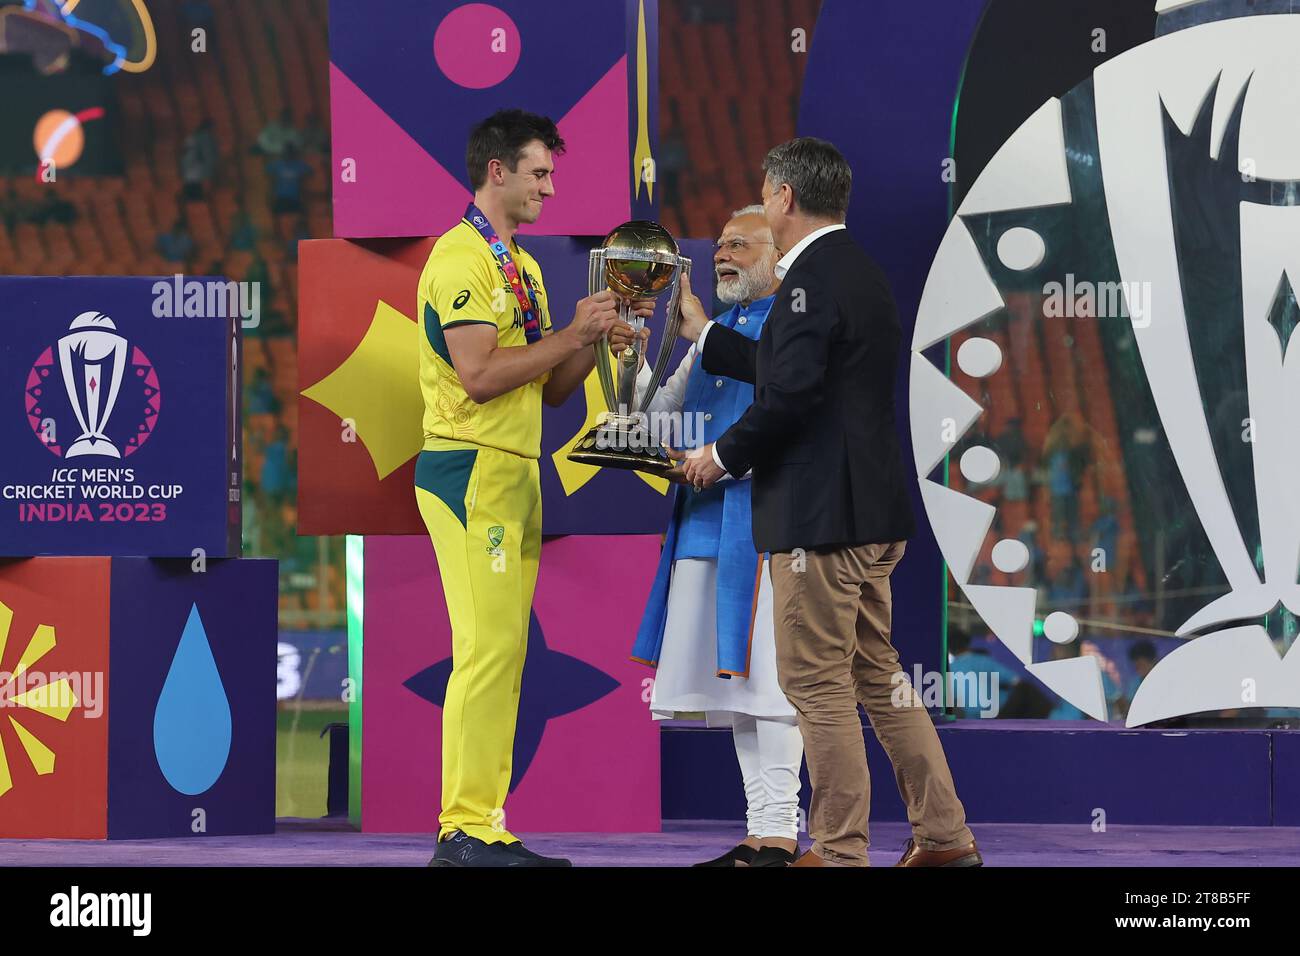 ICC Cricket-Weltmeisterschaft der Männer, Indien. , . ICC-Weltcupsieger für Herren. Die Trophäe wird vom indischen Premierminister sri Narendra Modi an den australischen Kapitän Cummins verliehen. Das gesamte australische Team feierte diesen bemerkenswerten Sieg in INDIEN Credit: Seshadri SUKUMAR/Alamy Live News Stockfoto